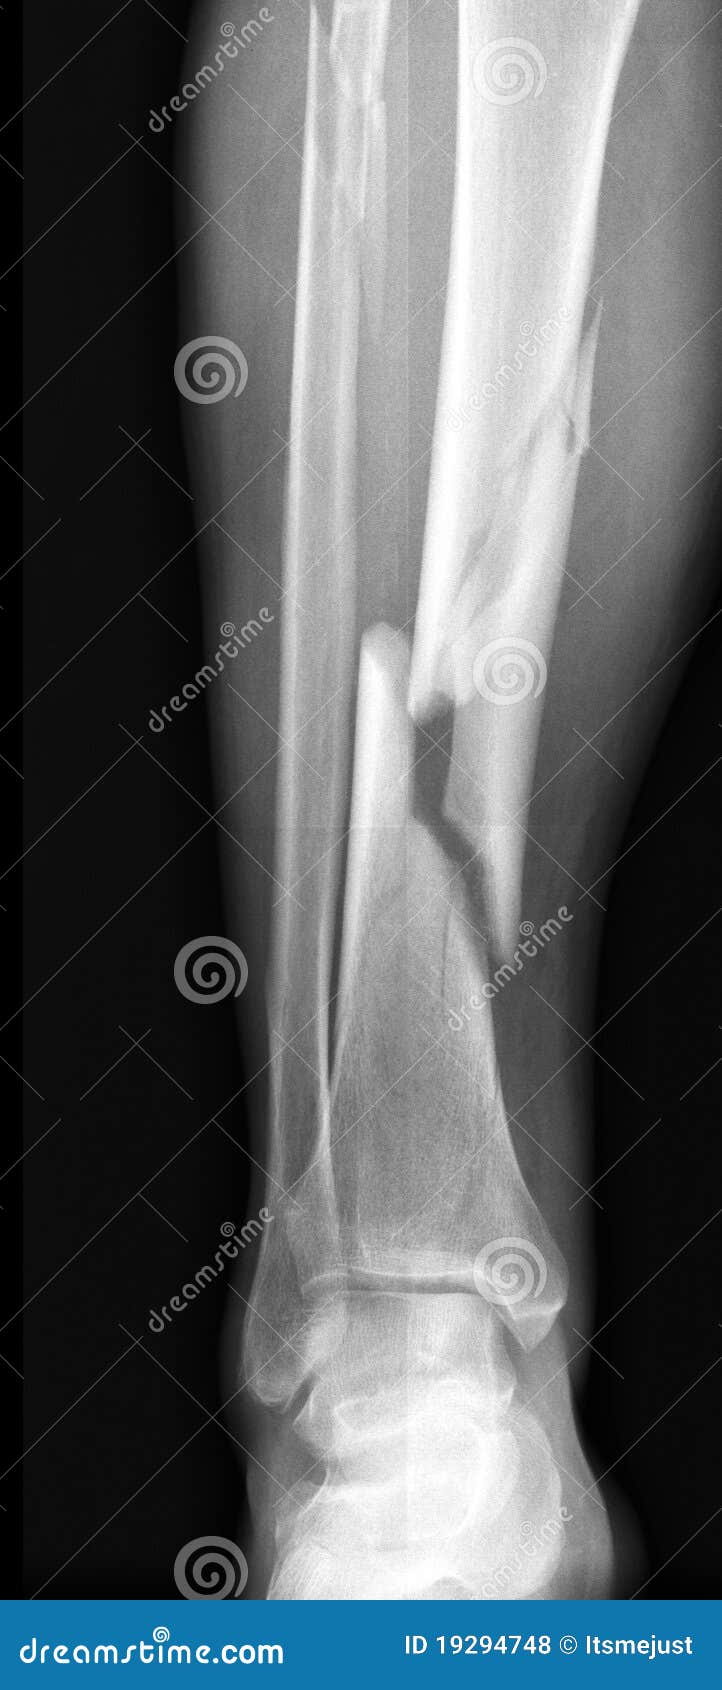 Трещина кости на ноге. Бамперный перелом голени рентген.